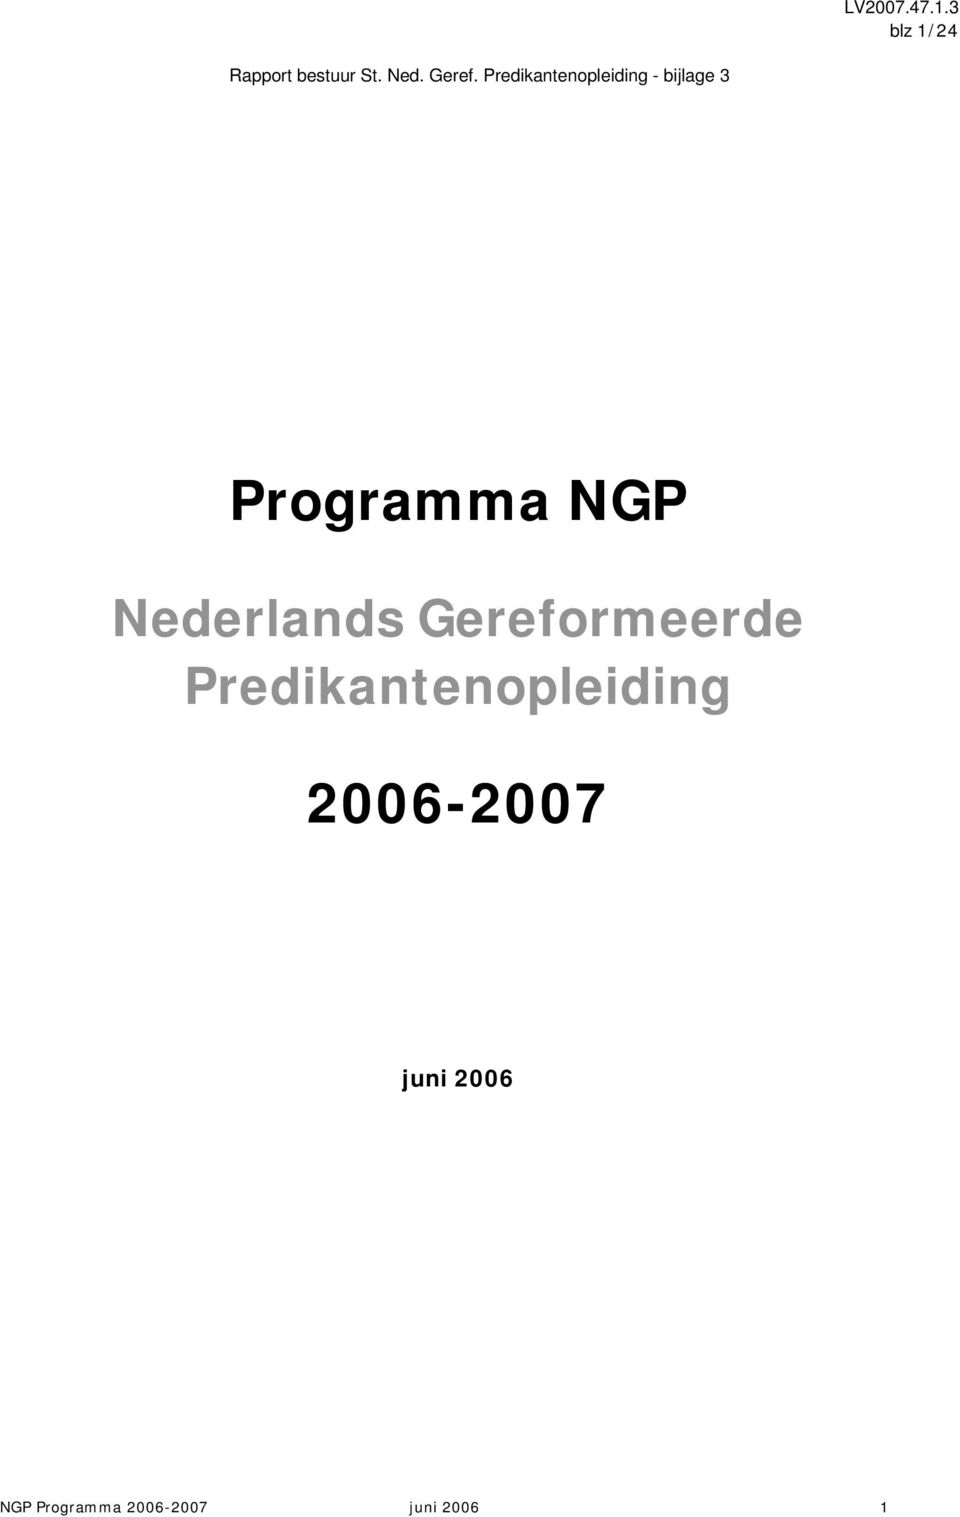 Predikantenopleiding 2006-2007